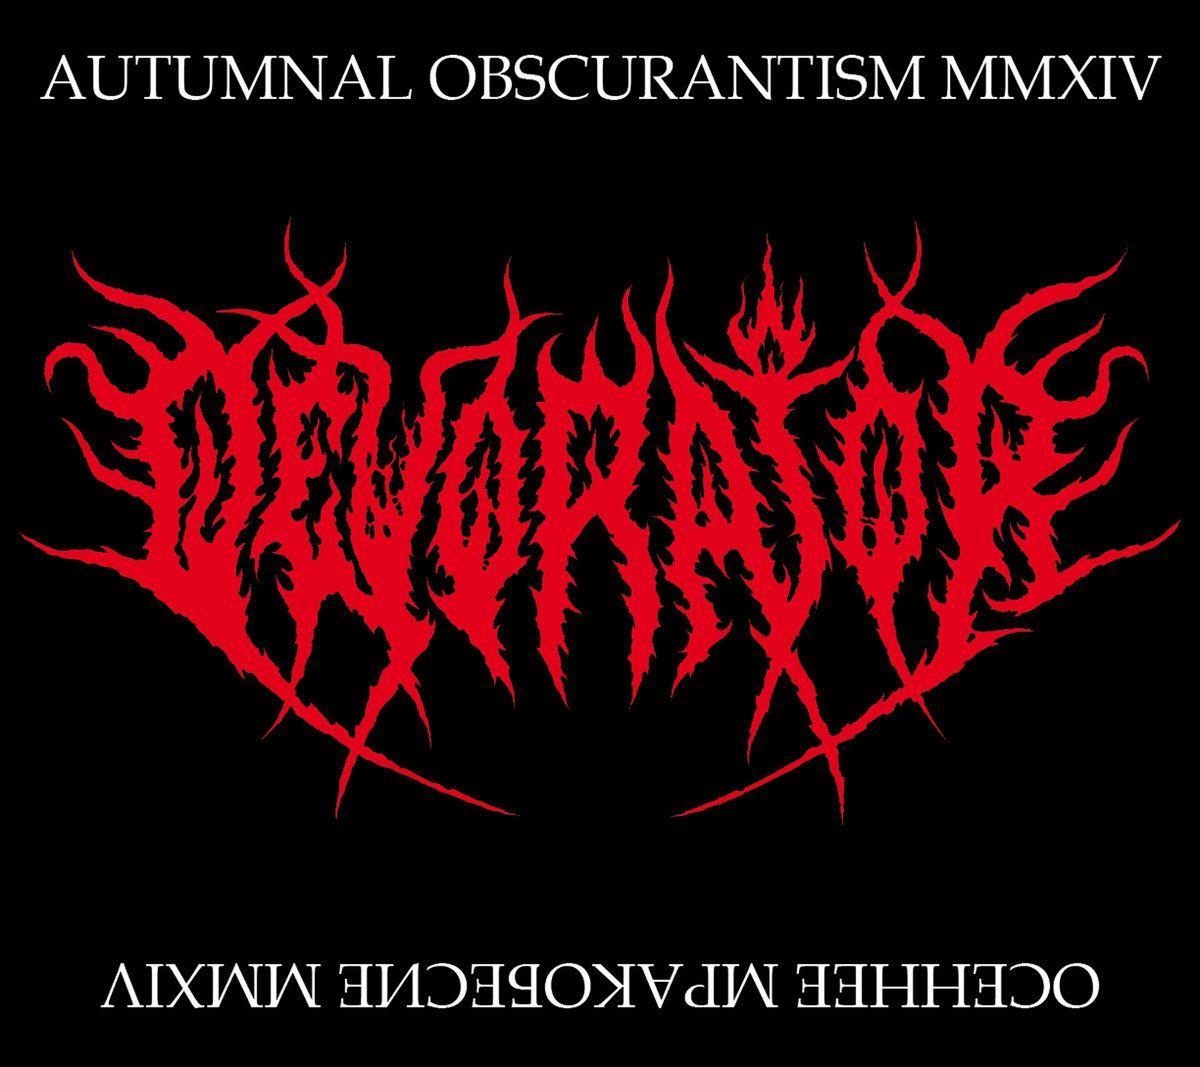 Mmxiv Logo - Осеннее Мракобесие MMXIV (Autumnal Obscurantism MMXIV). Thou Shalt